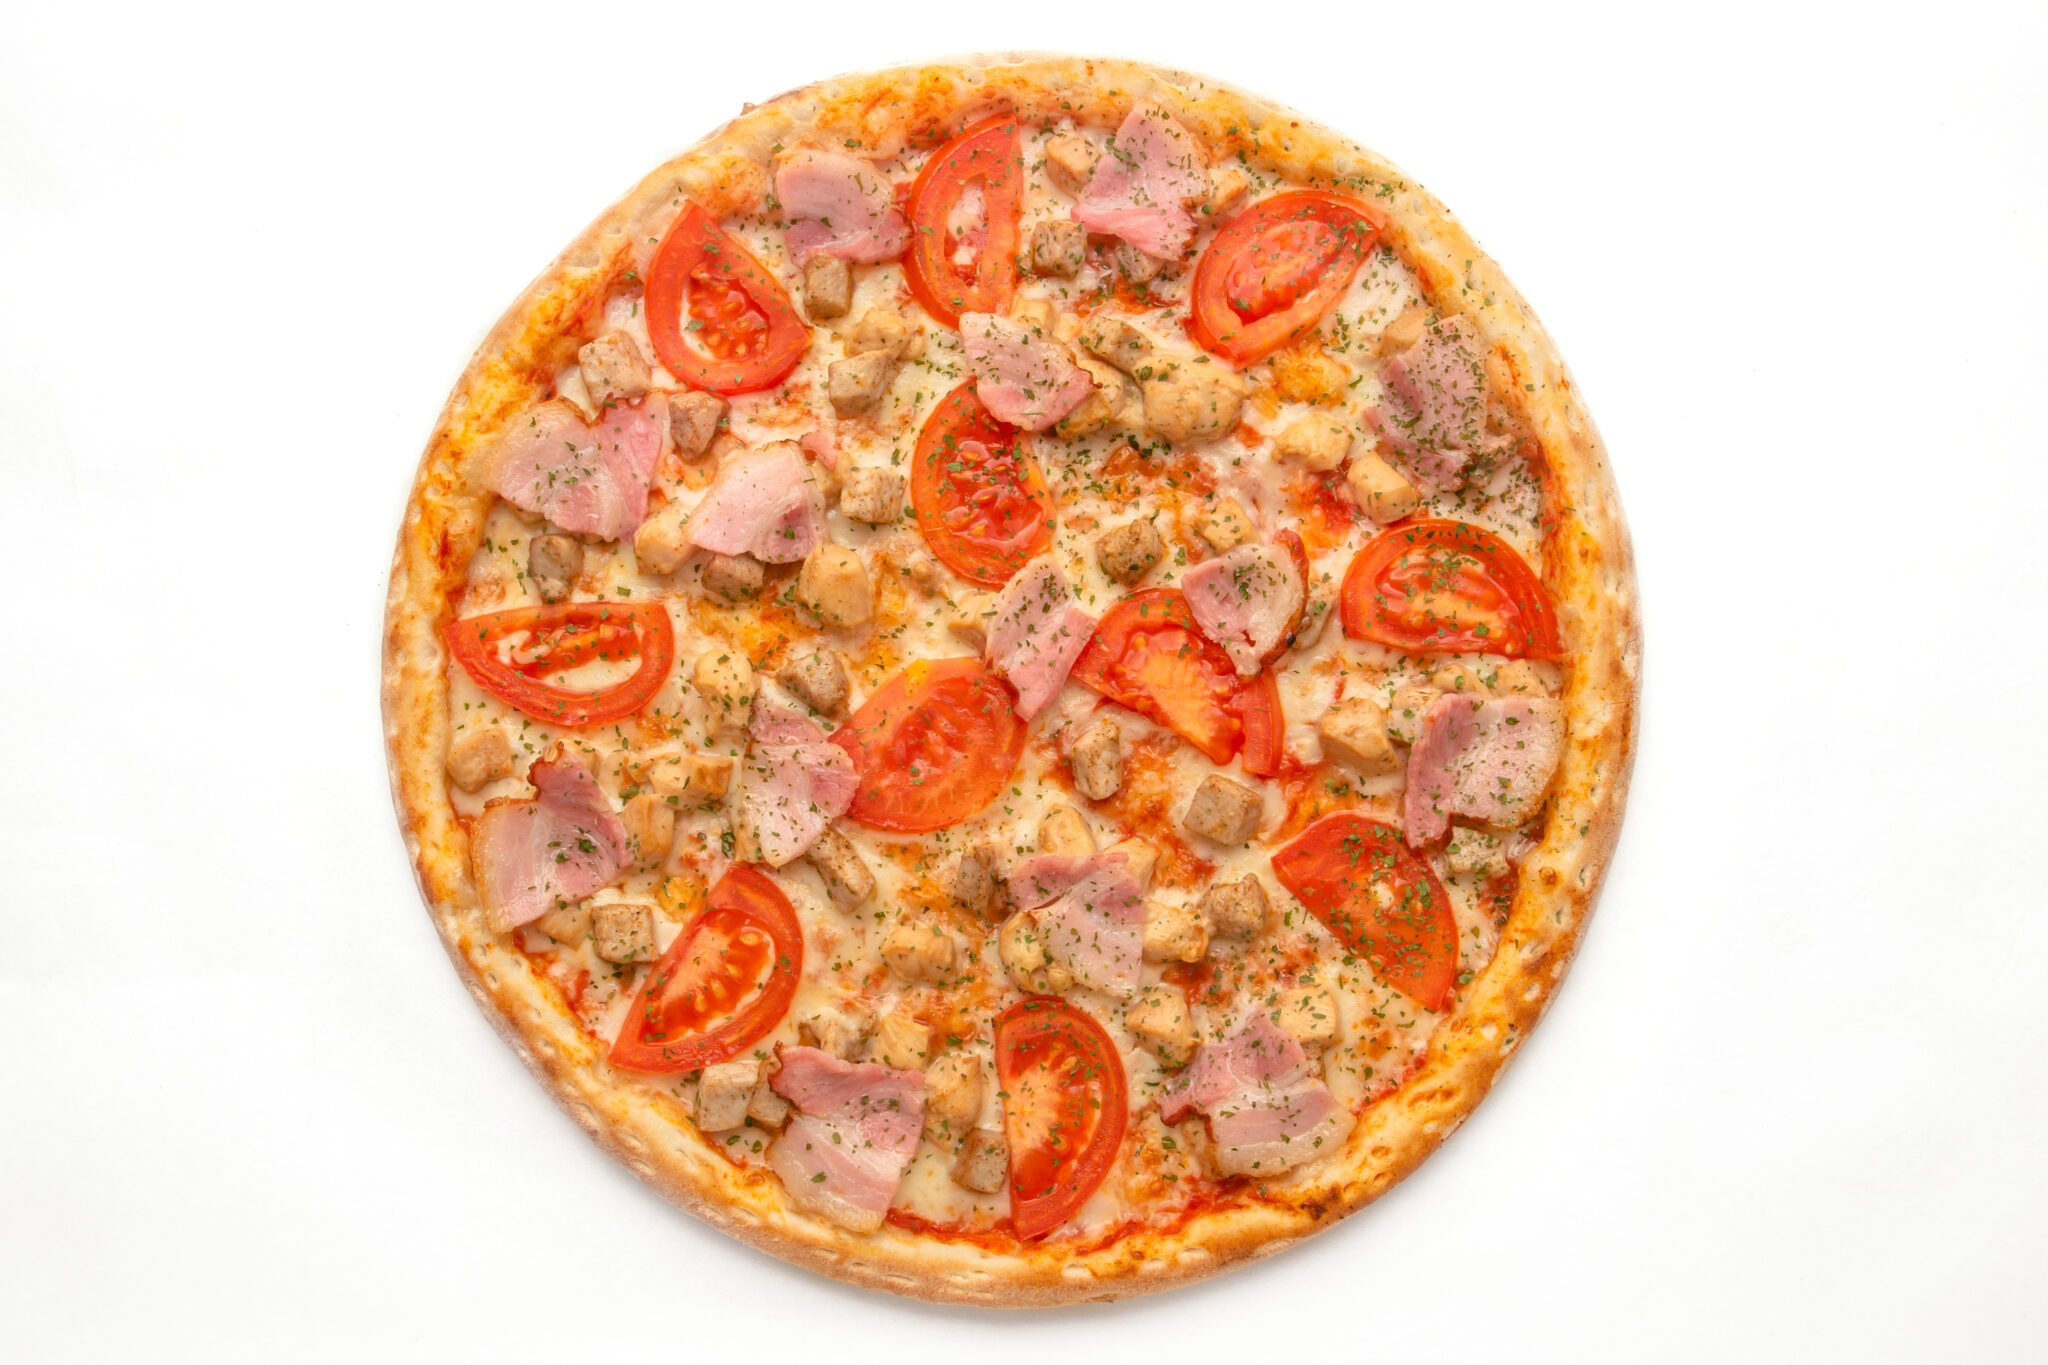 состав додо пиццы пепперони фото 99